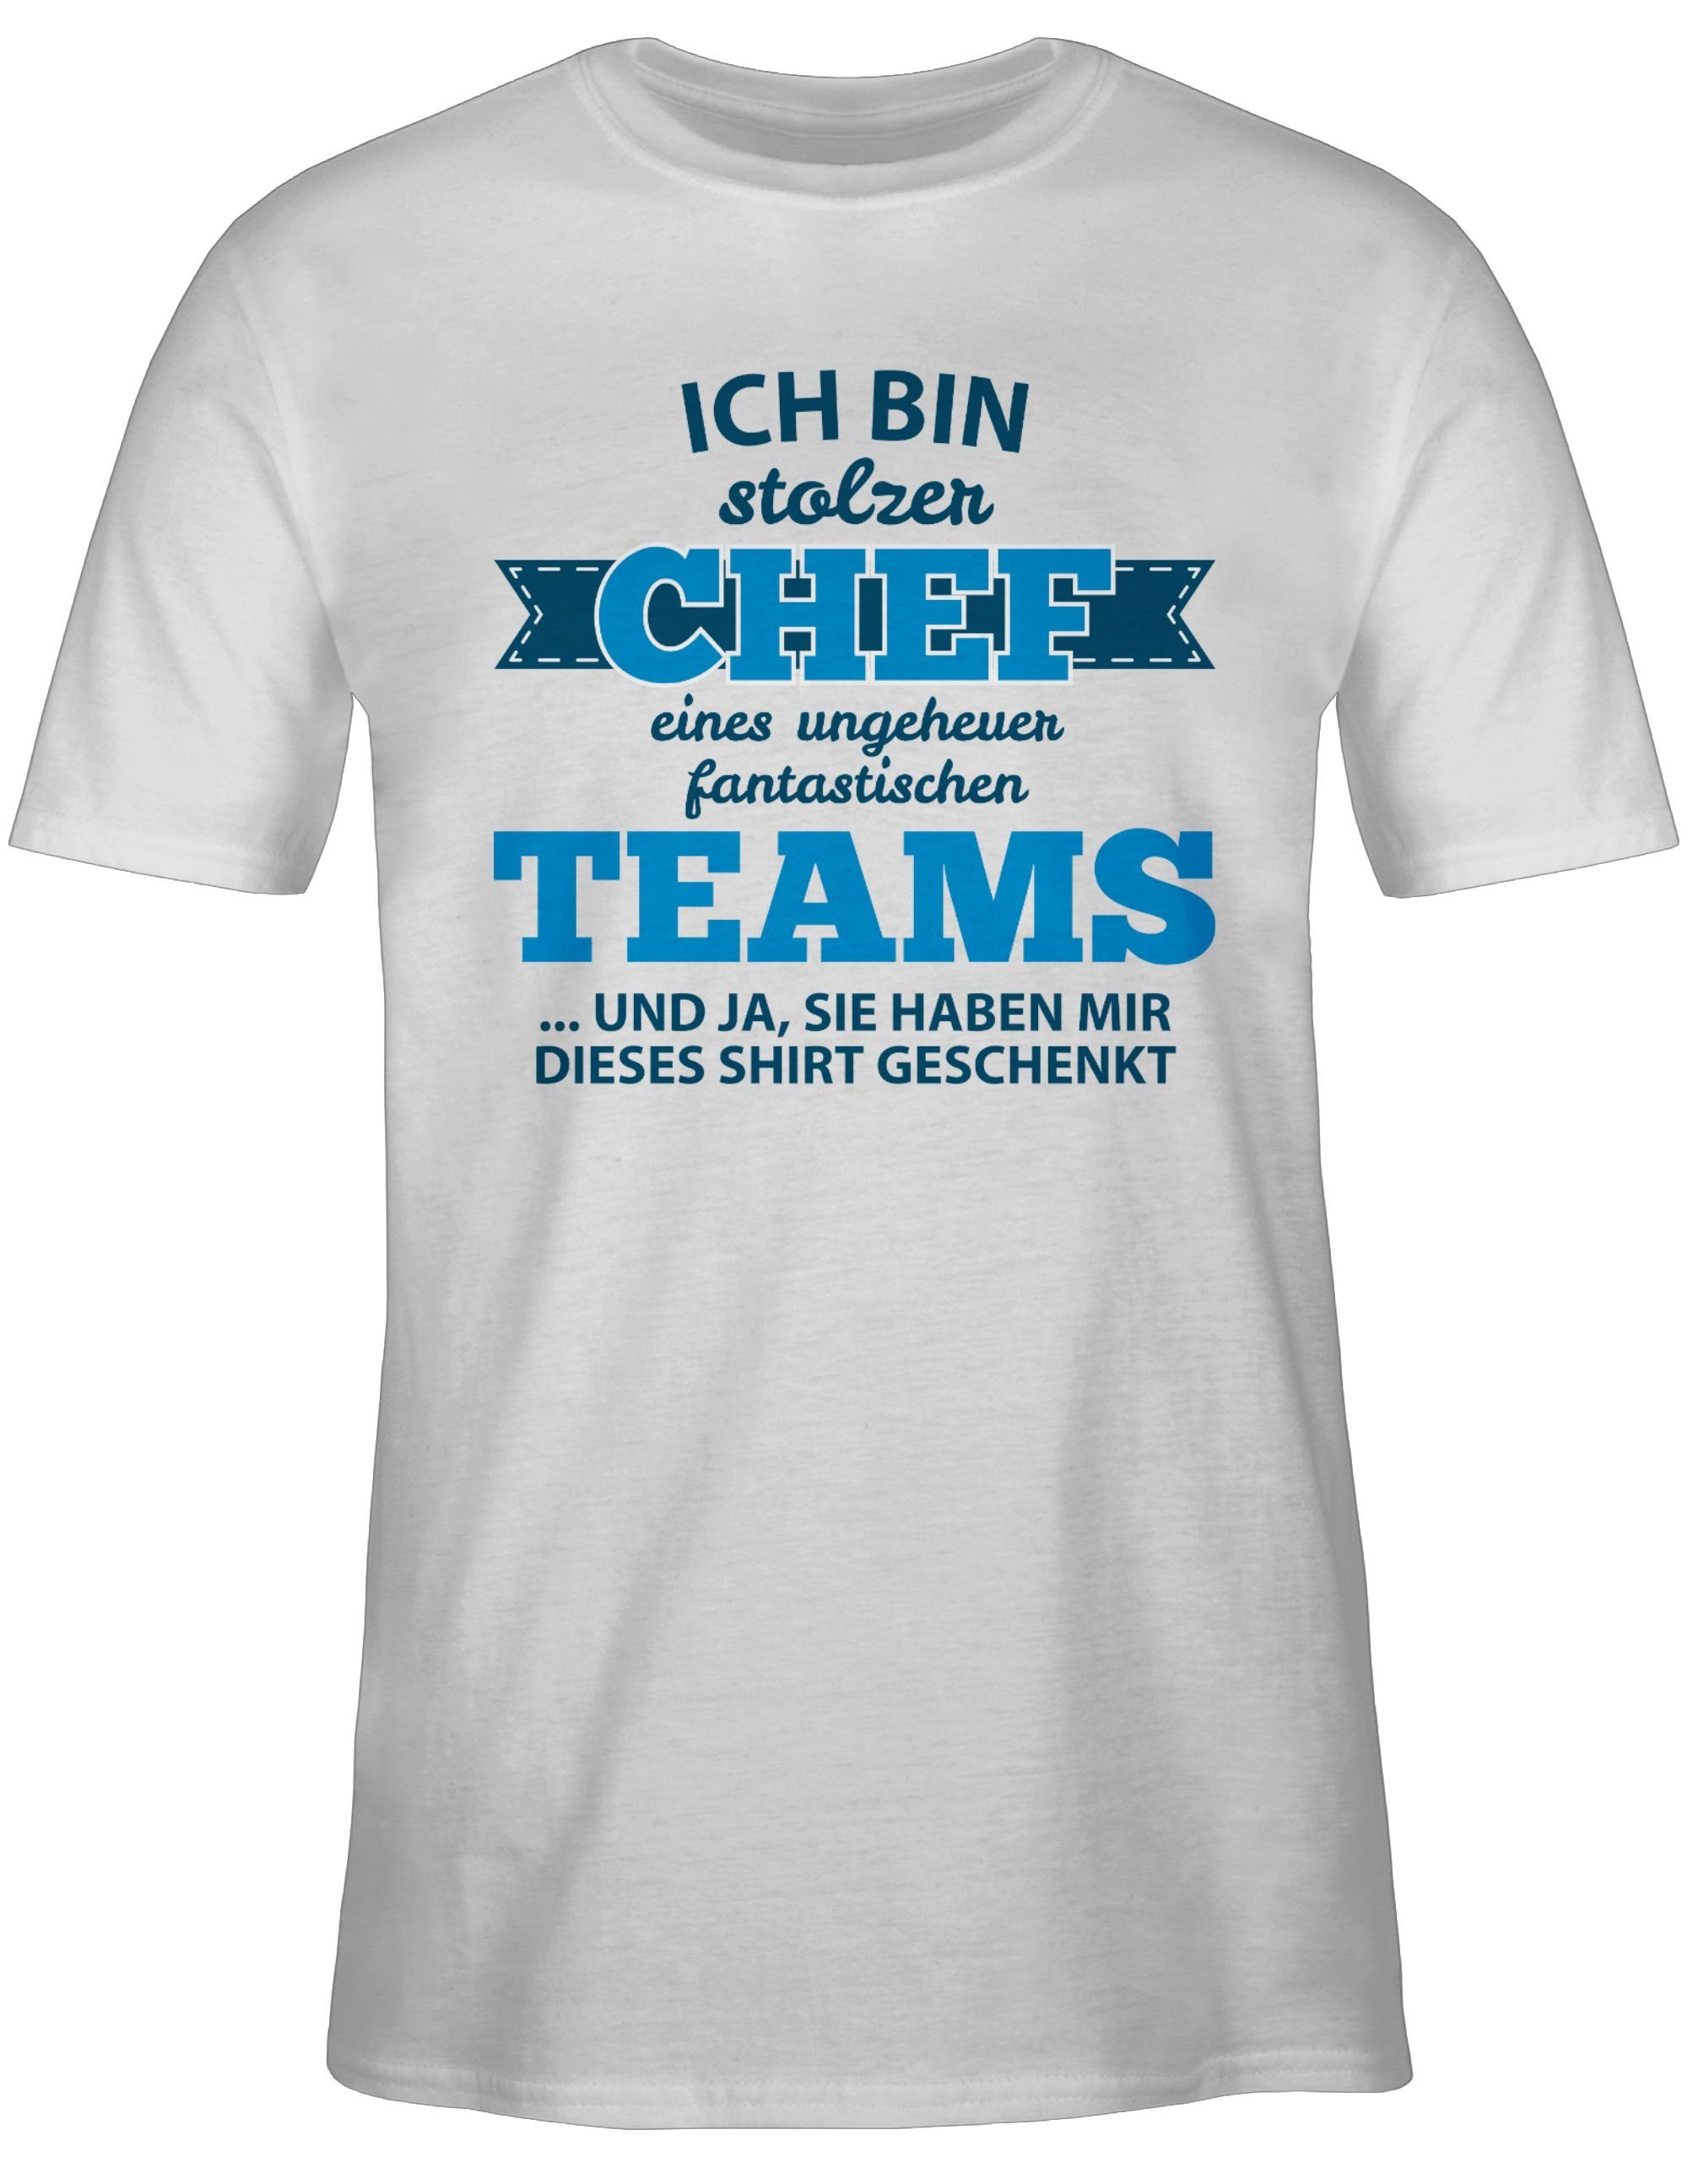 Chef und Geschenke Weiß T-Shirt Stolzer 2 Job Shirtracer Beruf Teams fantastischen eines Shirt